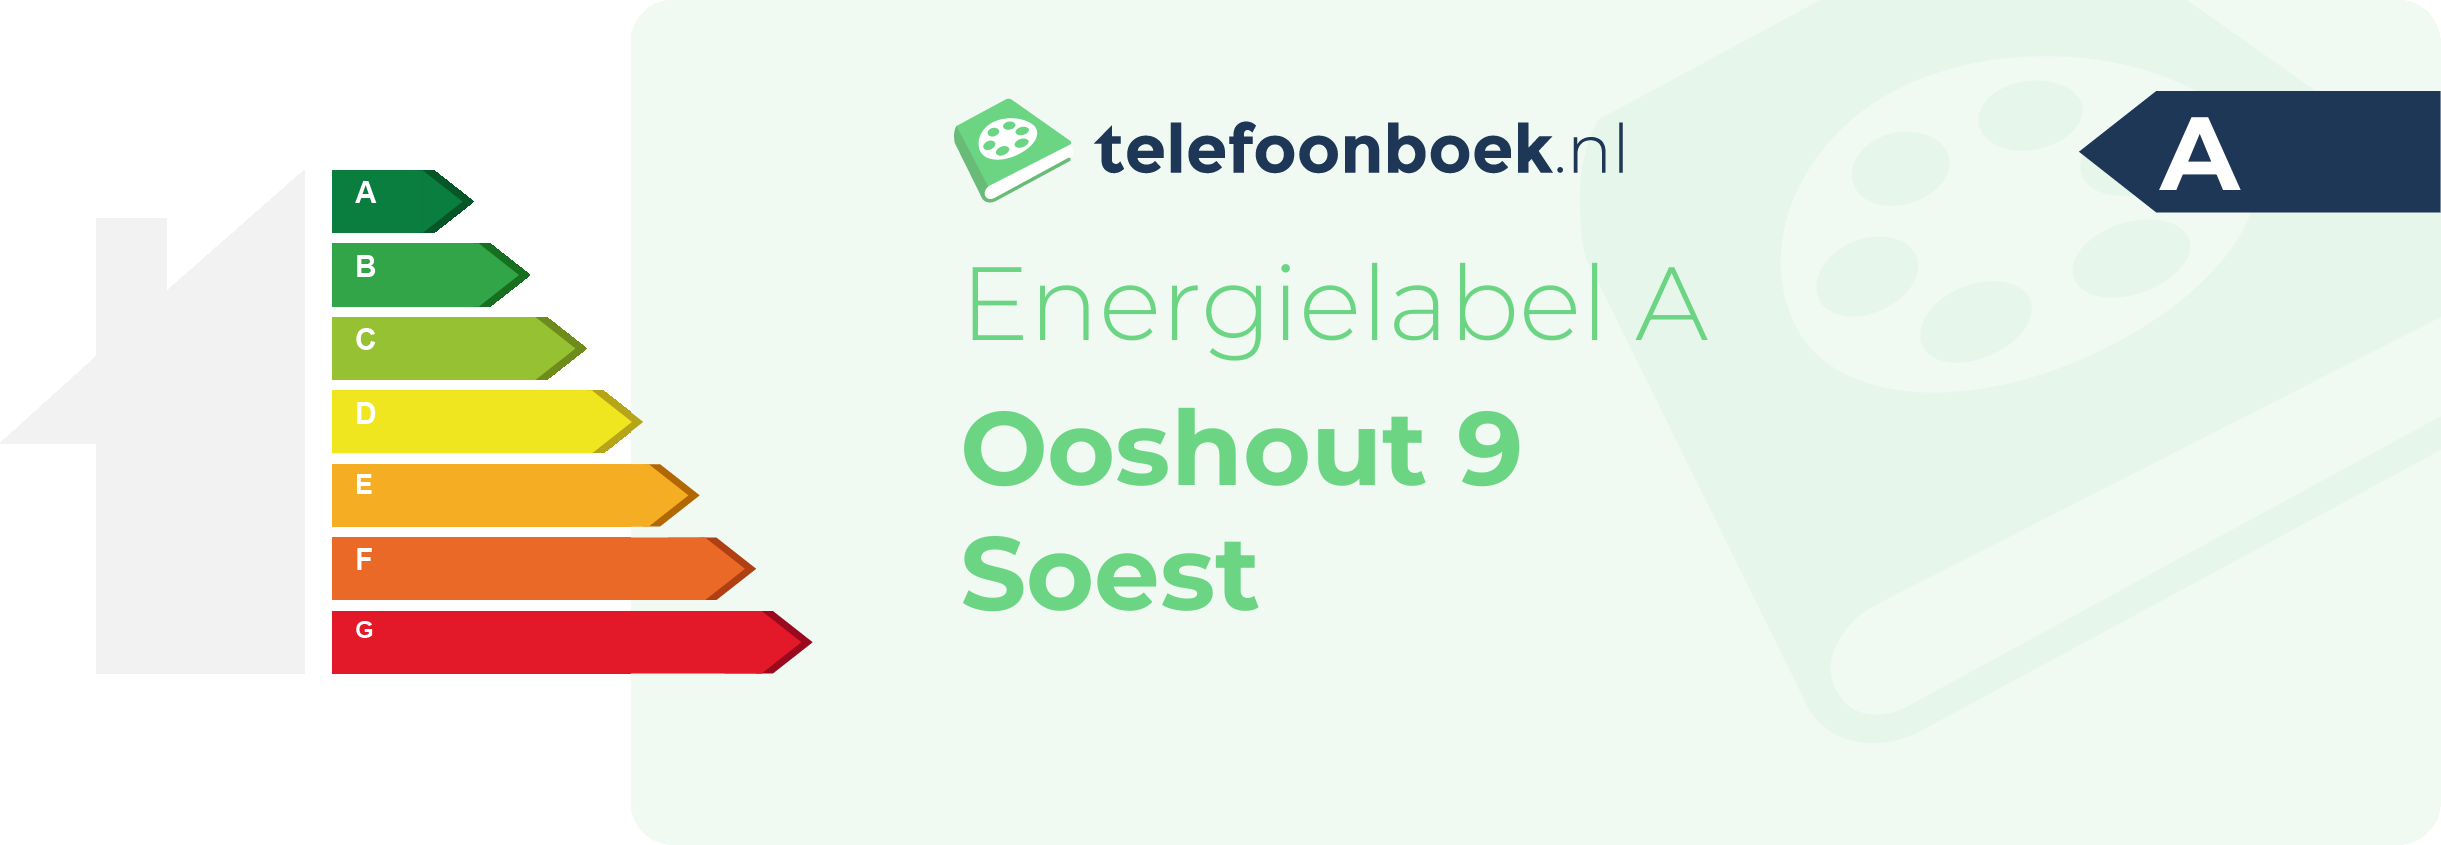 Energielabel Ooshout 9 Soest